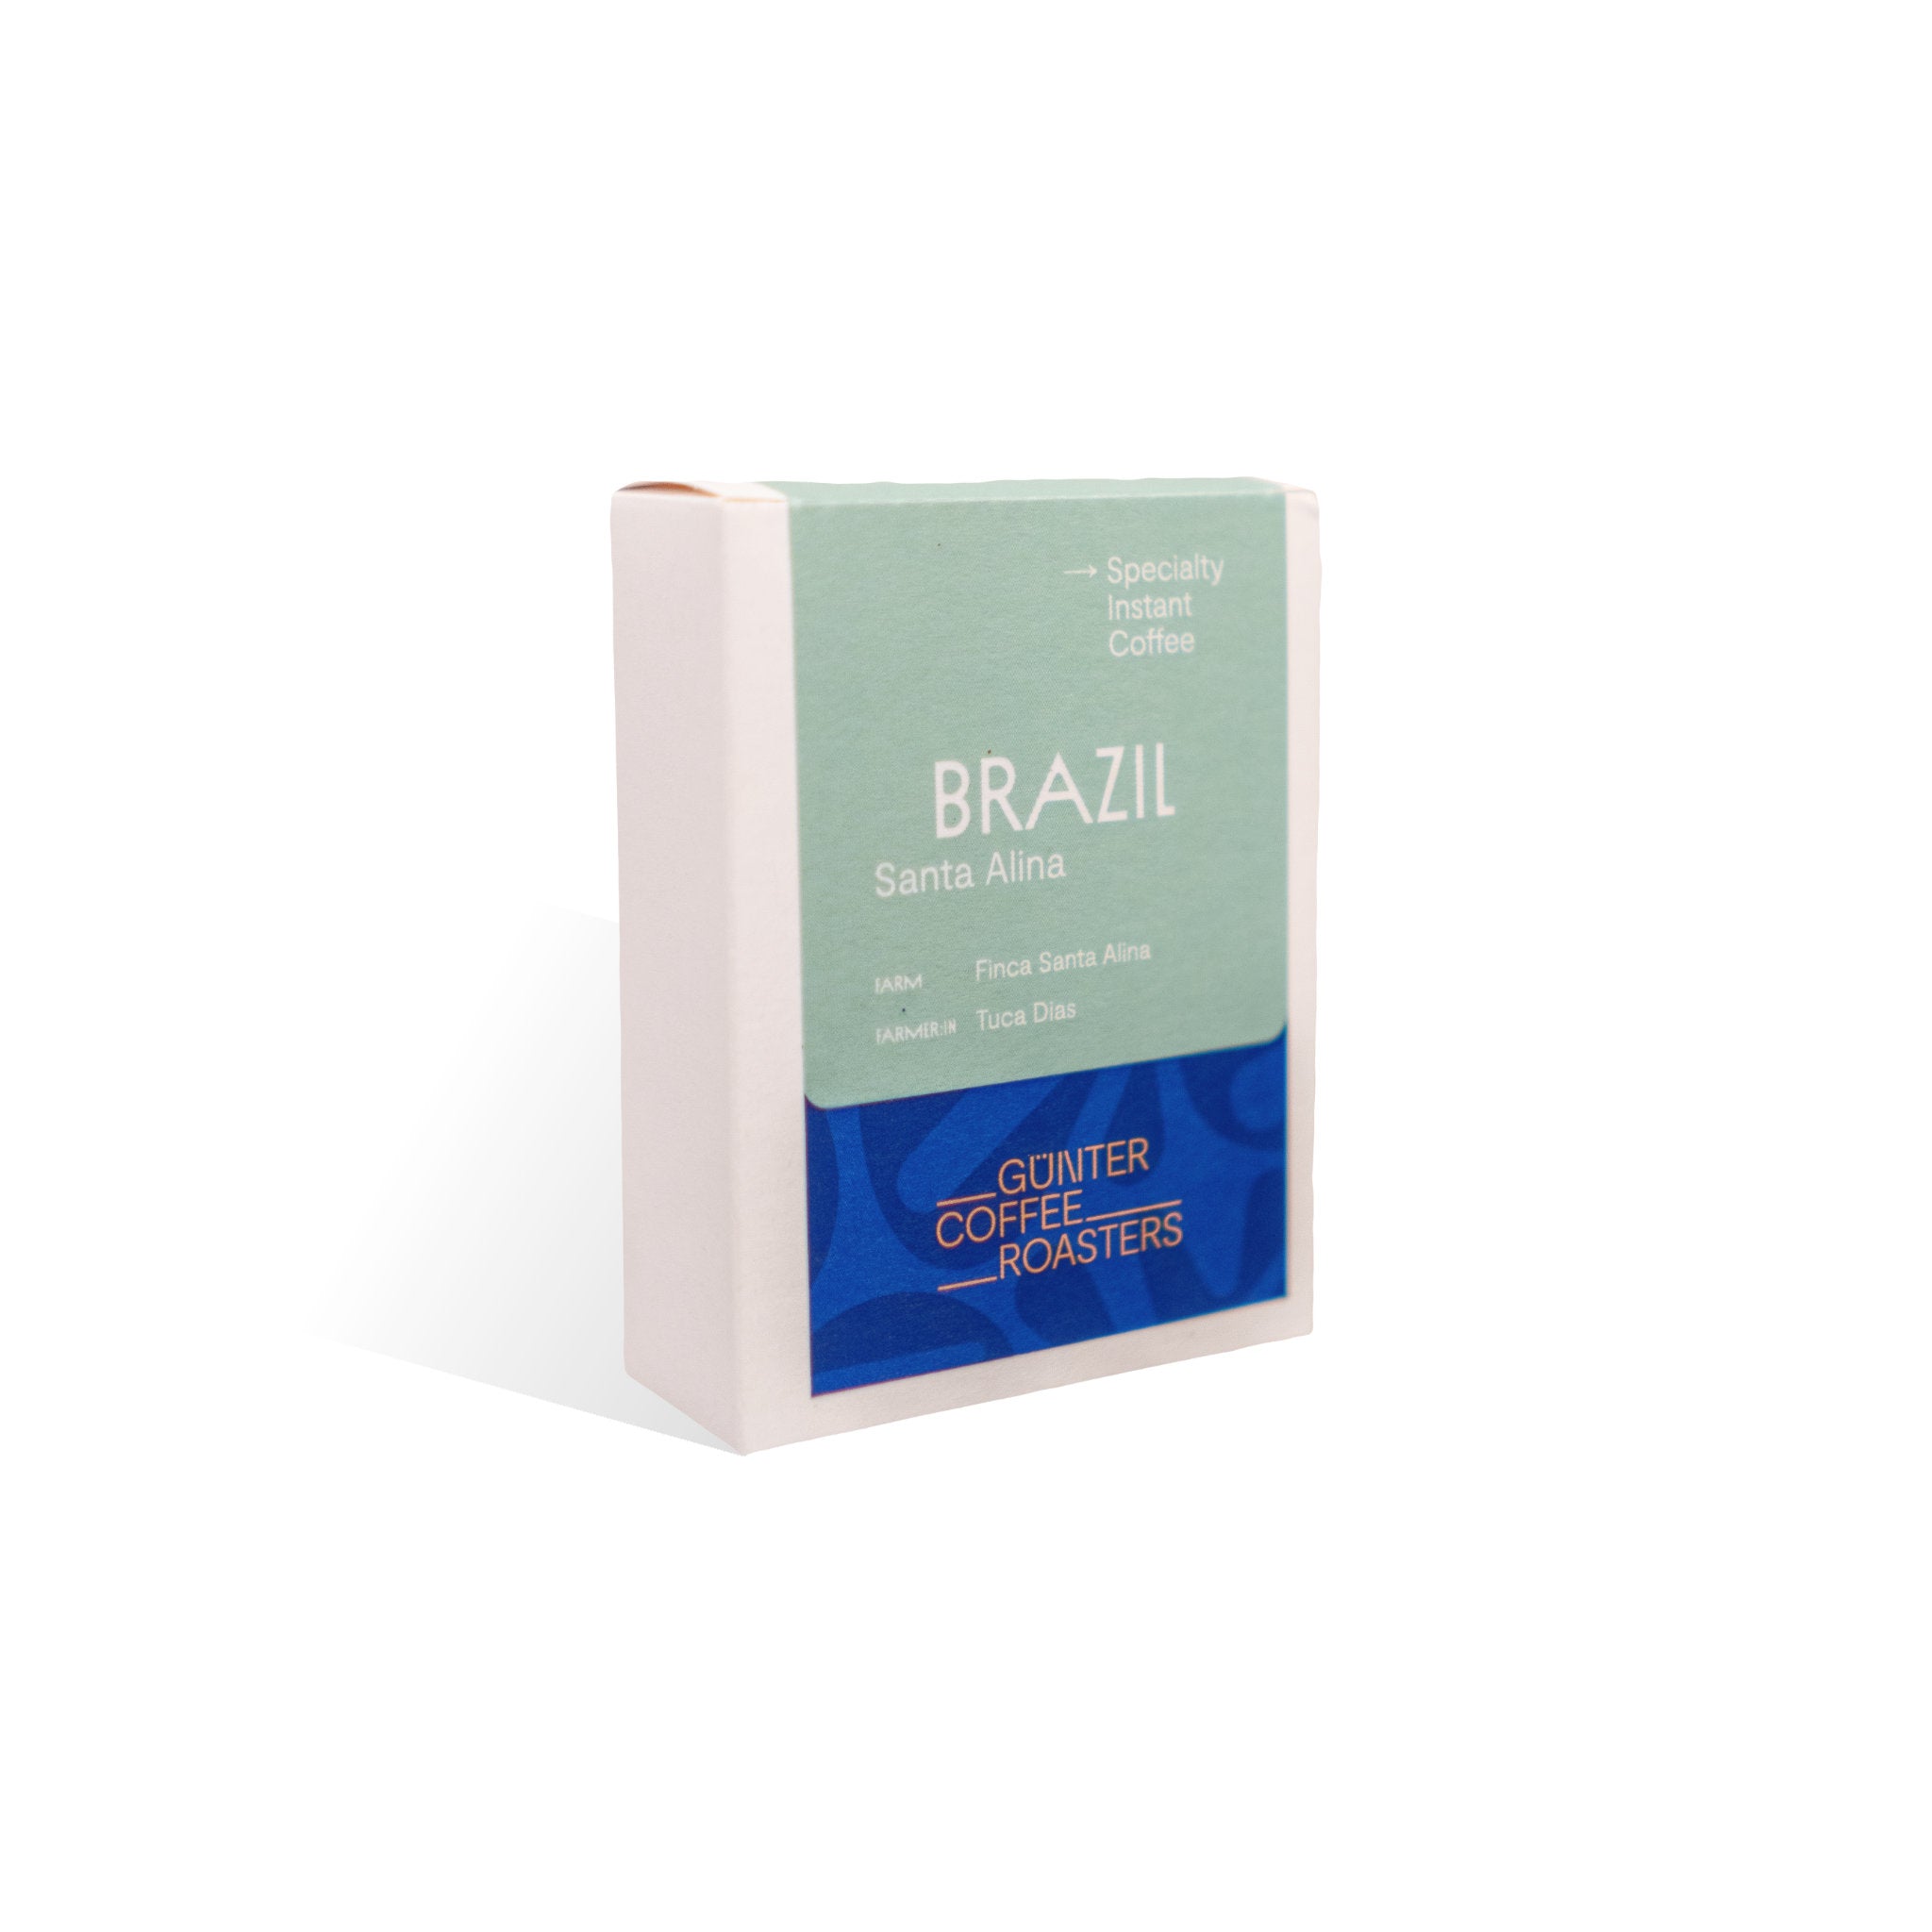 Instantkaffee Brazil Santa Alina. Produktverpackung mit fünf Portionen Kaffee.